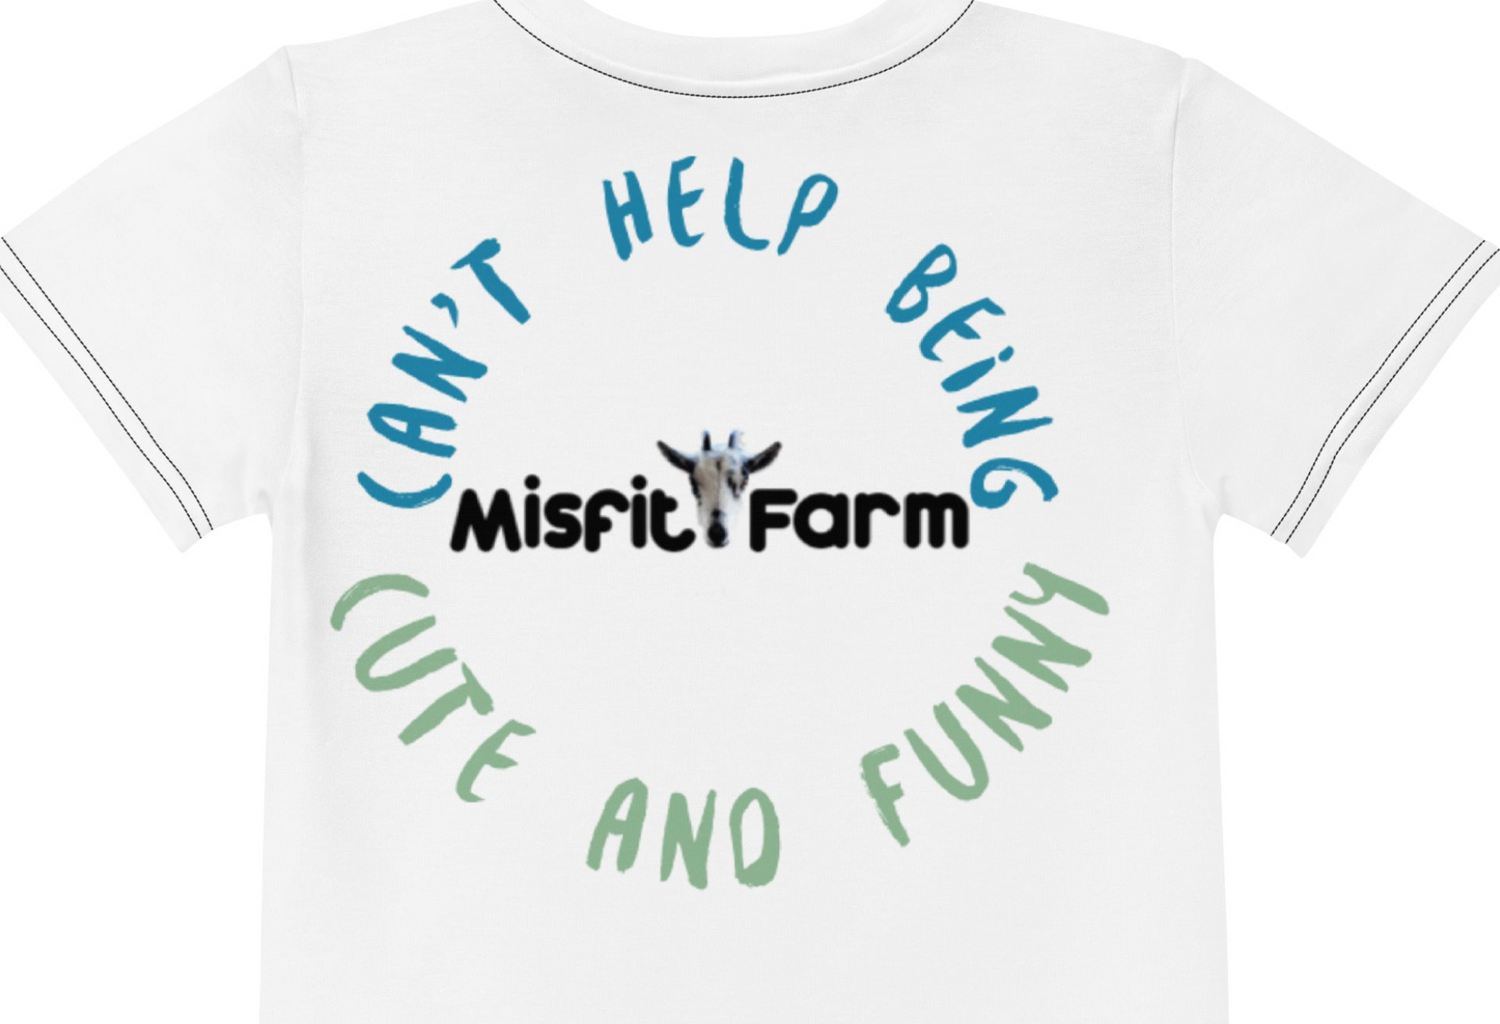 The Misfit Farm Longline sports bra